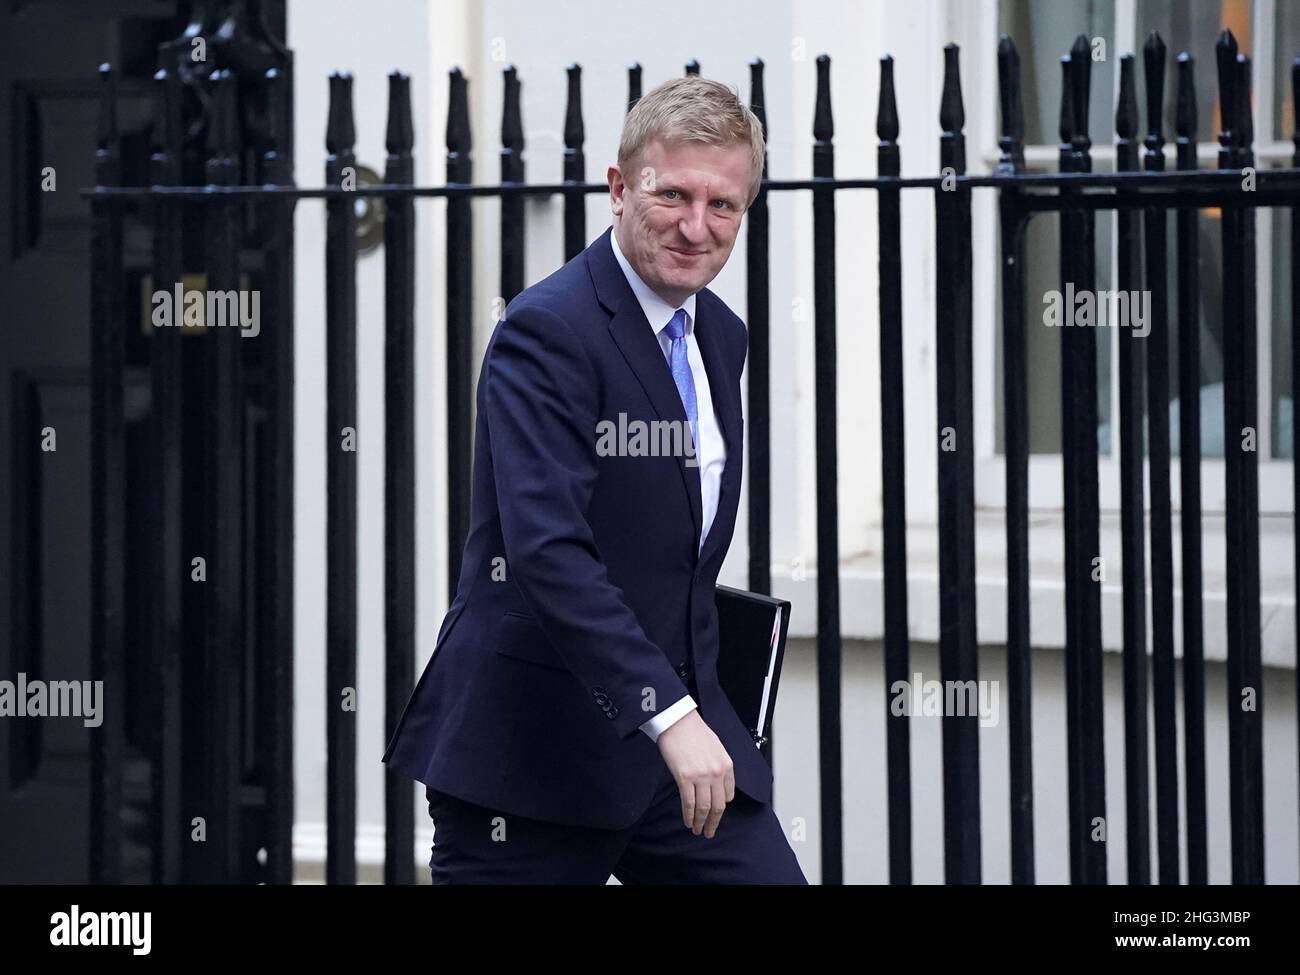 Oliver Dowden, Vorsitzender der Konservativen Partei, kommt vor der wöchentlichen Kabinettssitzung der Regierung in der Downing Street in London an. Bilddatum: Dienstag, 18. Januar 2022. Stockfoto